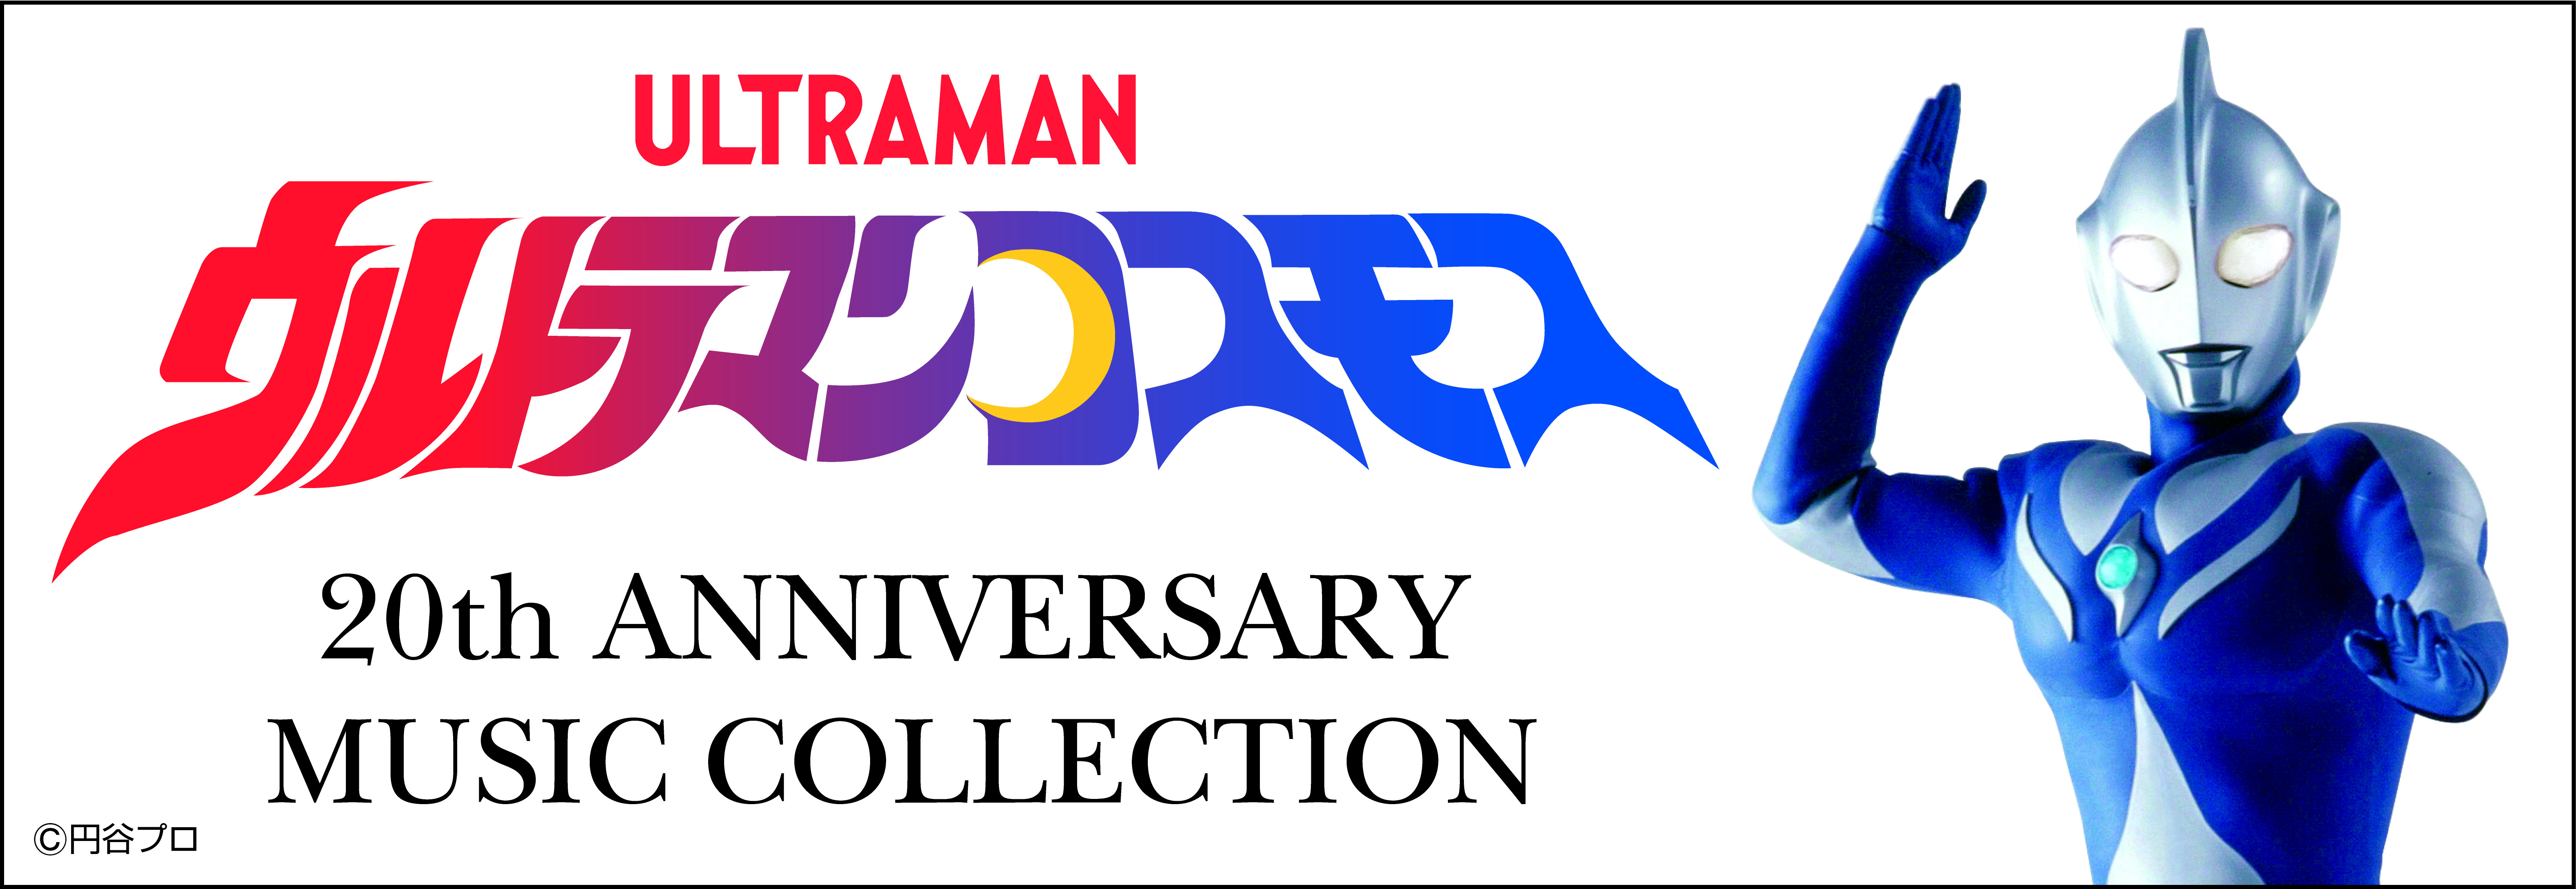 やさしさと強さ そして勇気をあわせもつウルトラマン ウルトラマンコスモス 放送開始から周年を記念したcd Boxが発売決定 日本コロムビア株式会社のプレスリリース